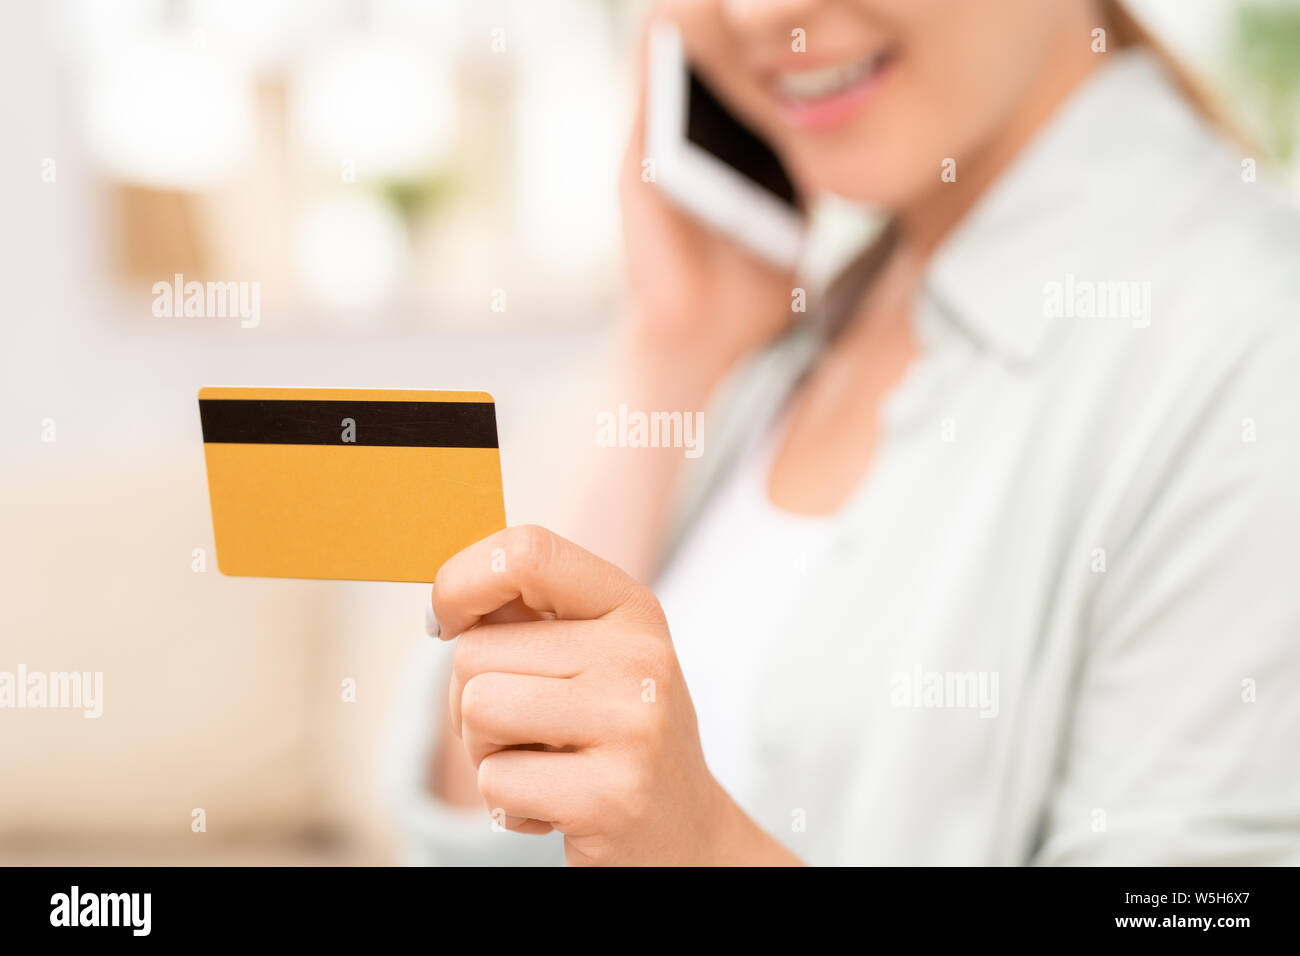 Gelbe Plastikkarte mit schwarzen magnet Linie in der Hand der jungen weiblichen Verbraucher Stockfoto